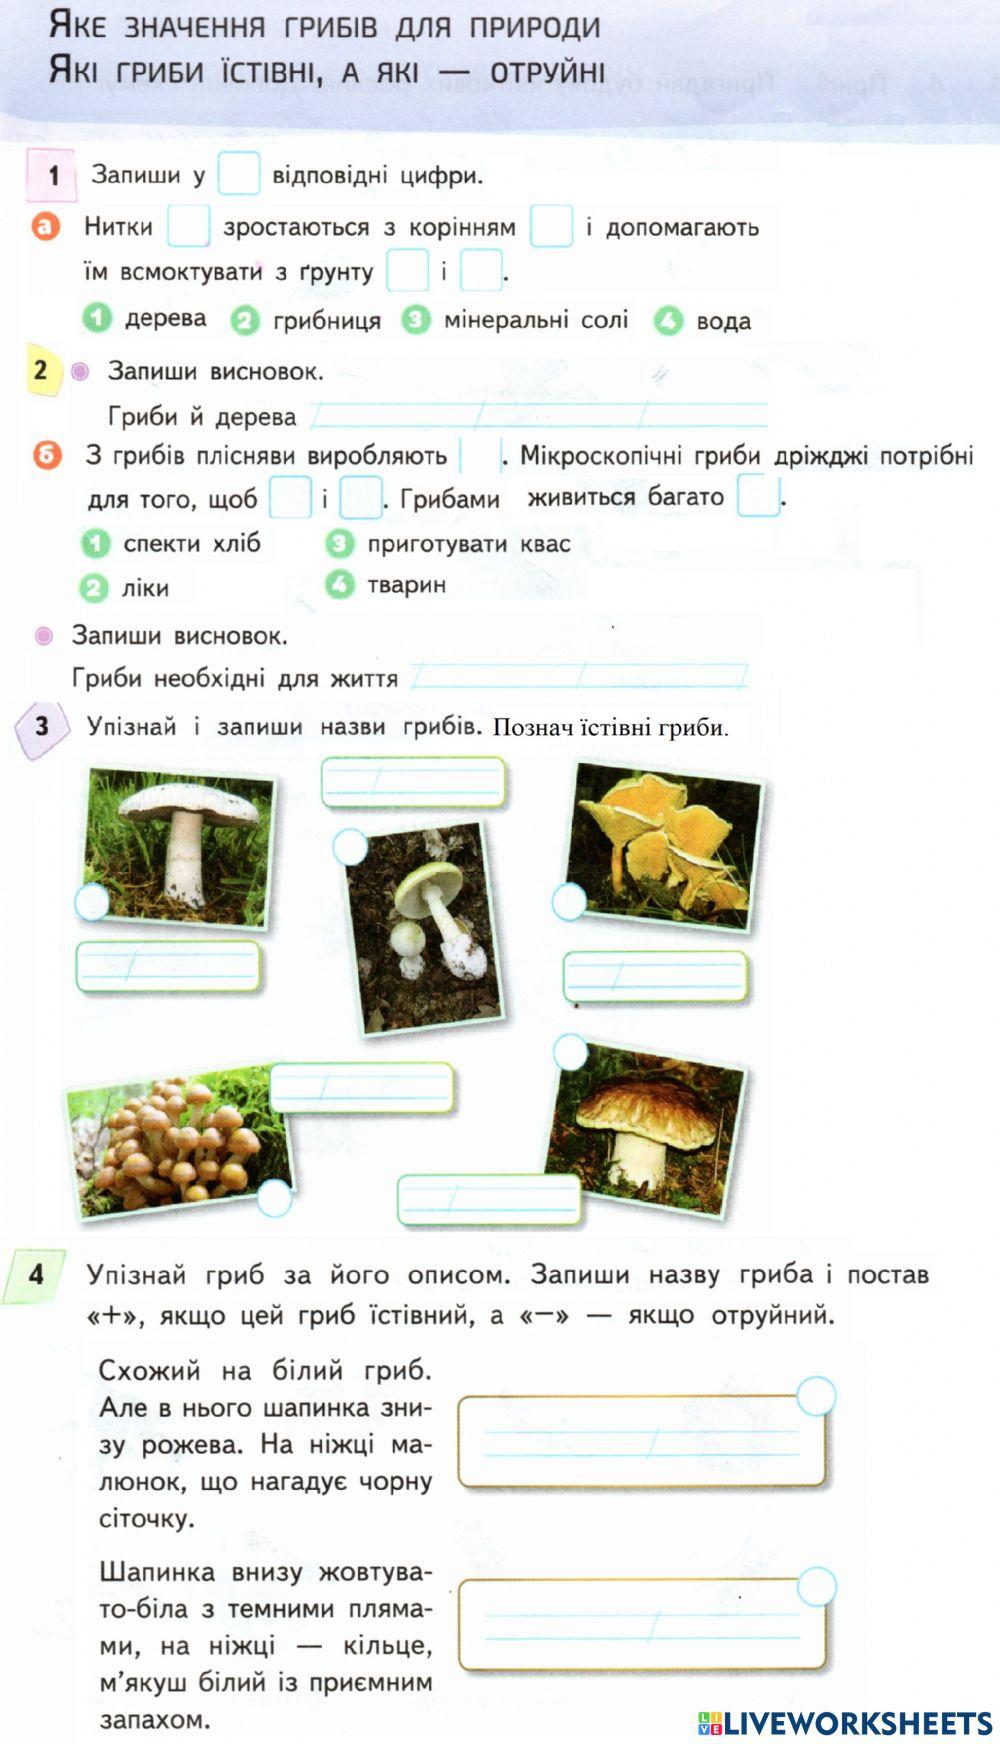 Значення грибів. Отруйні і їстівні гриби.